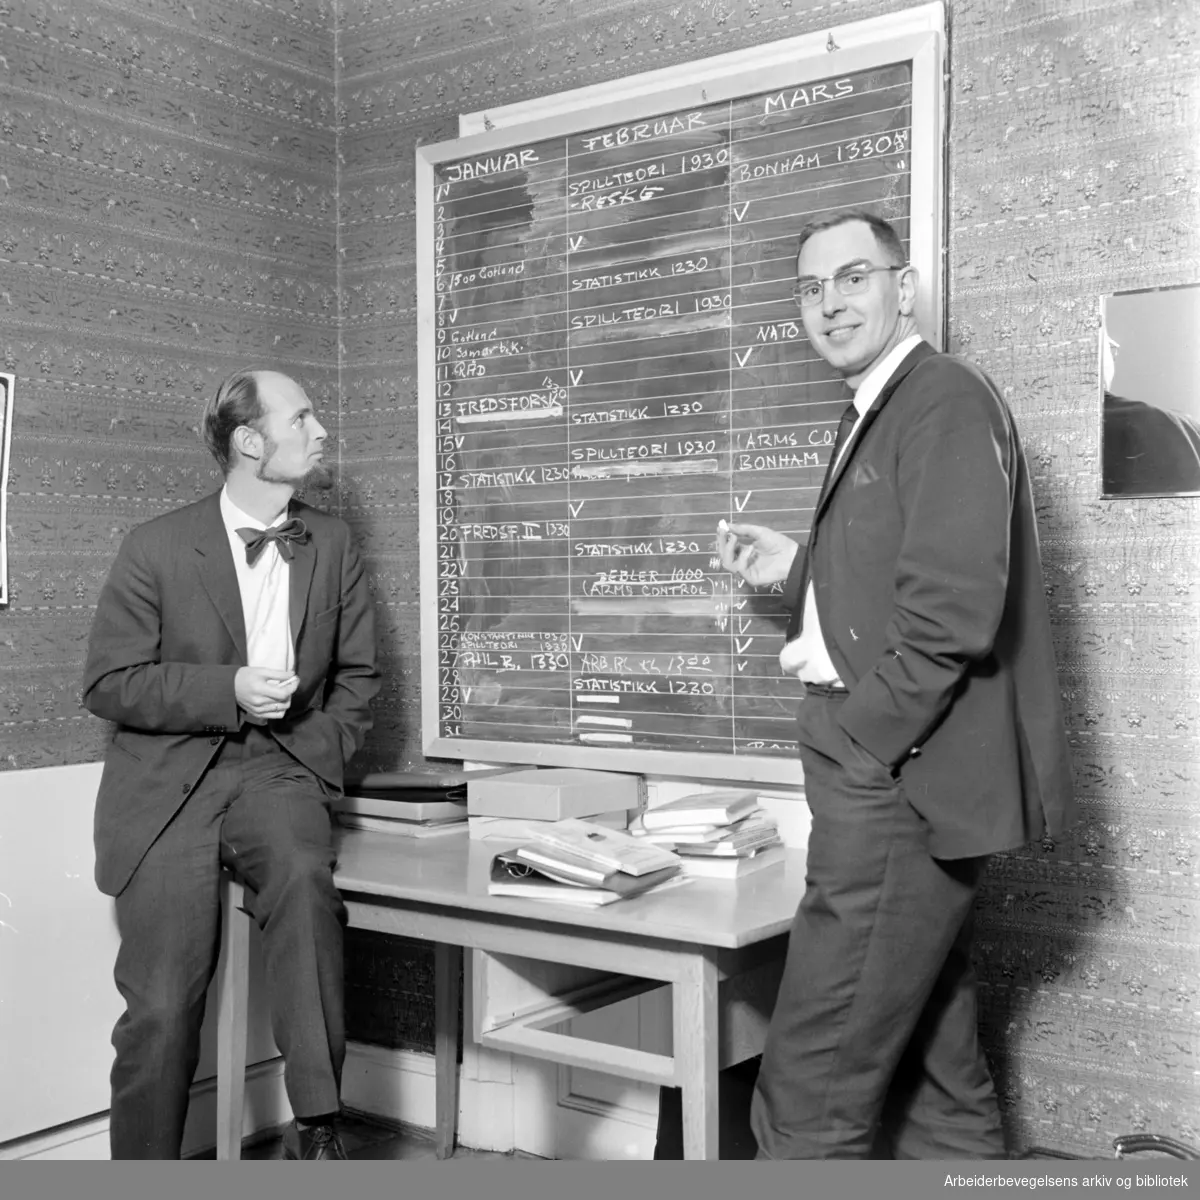 Utenrikspolitisk institutt i Parkveien. Olav Stokke og Per Frydenberg studerer tavlen, som forteller om dagsprogrammene ved Instituttet. Mars 1967